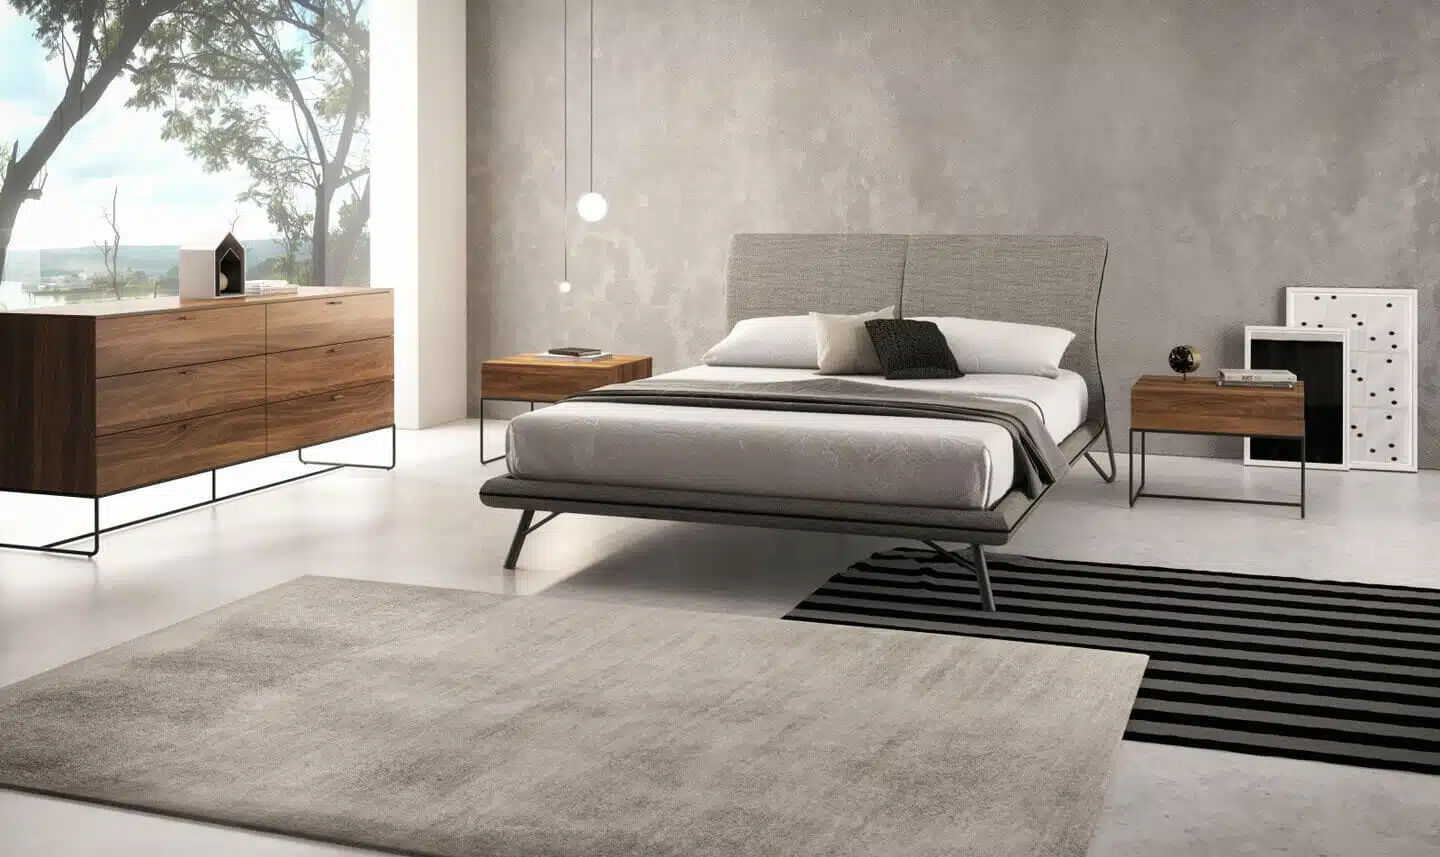 Upholstered Modern Bed Frames from San Francisco Design